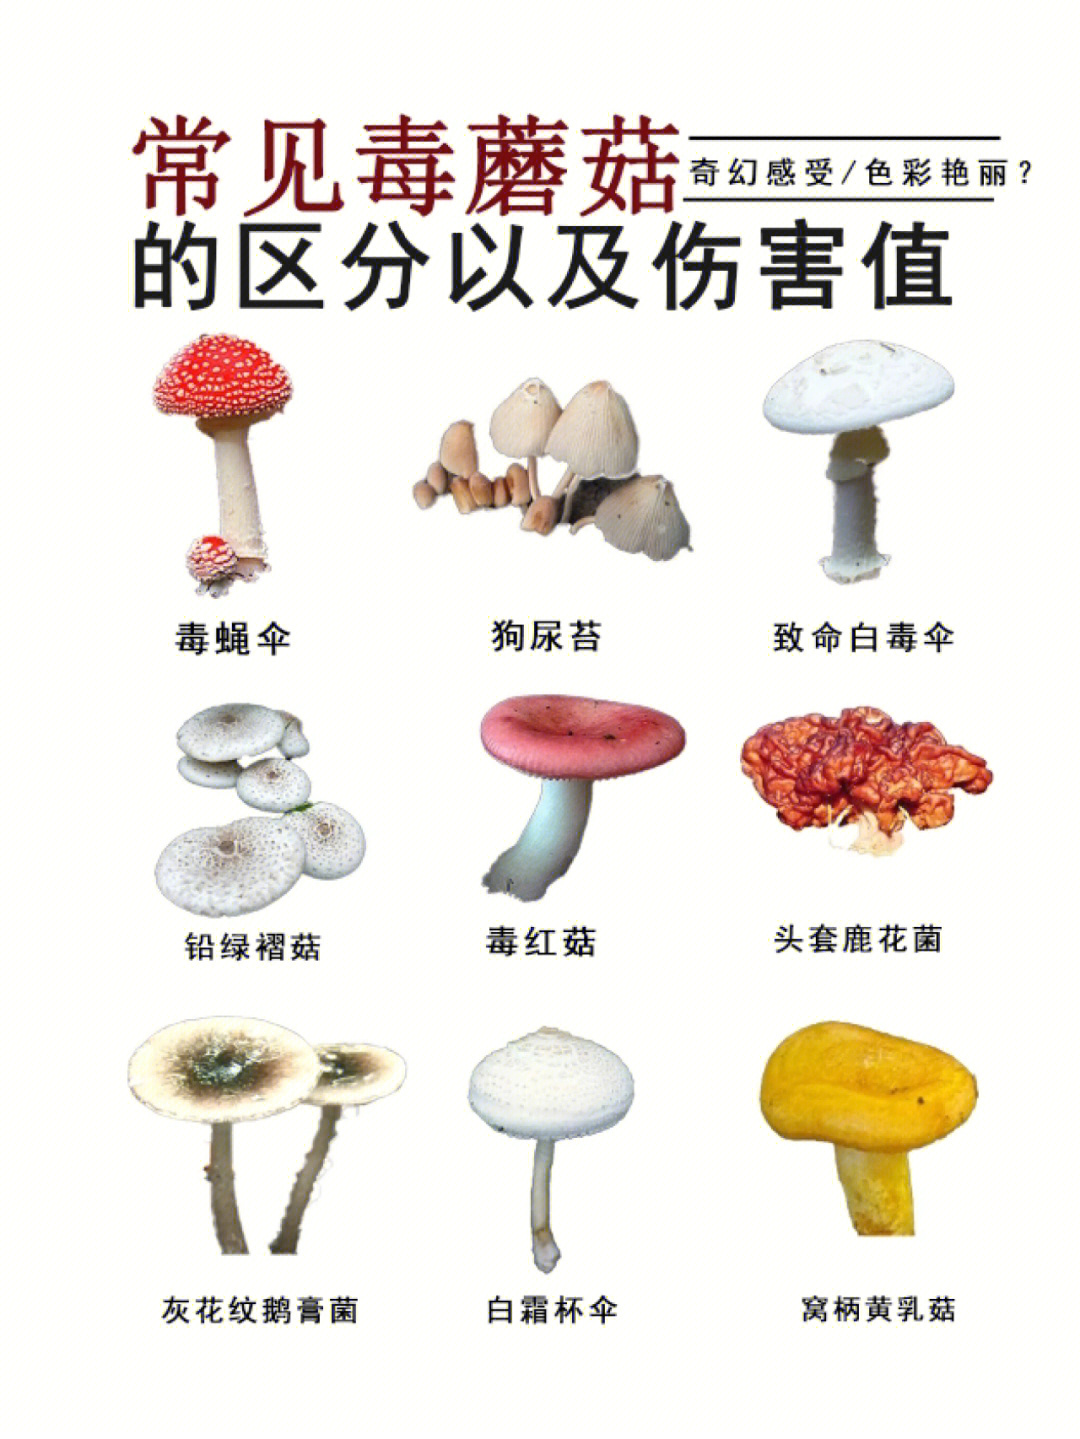 柳树蘑菇 不能吃图片